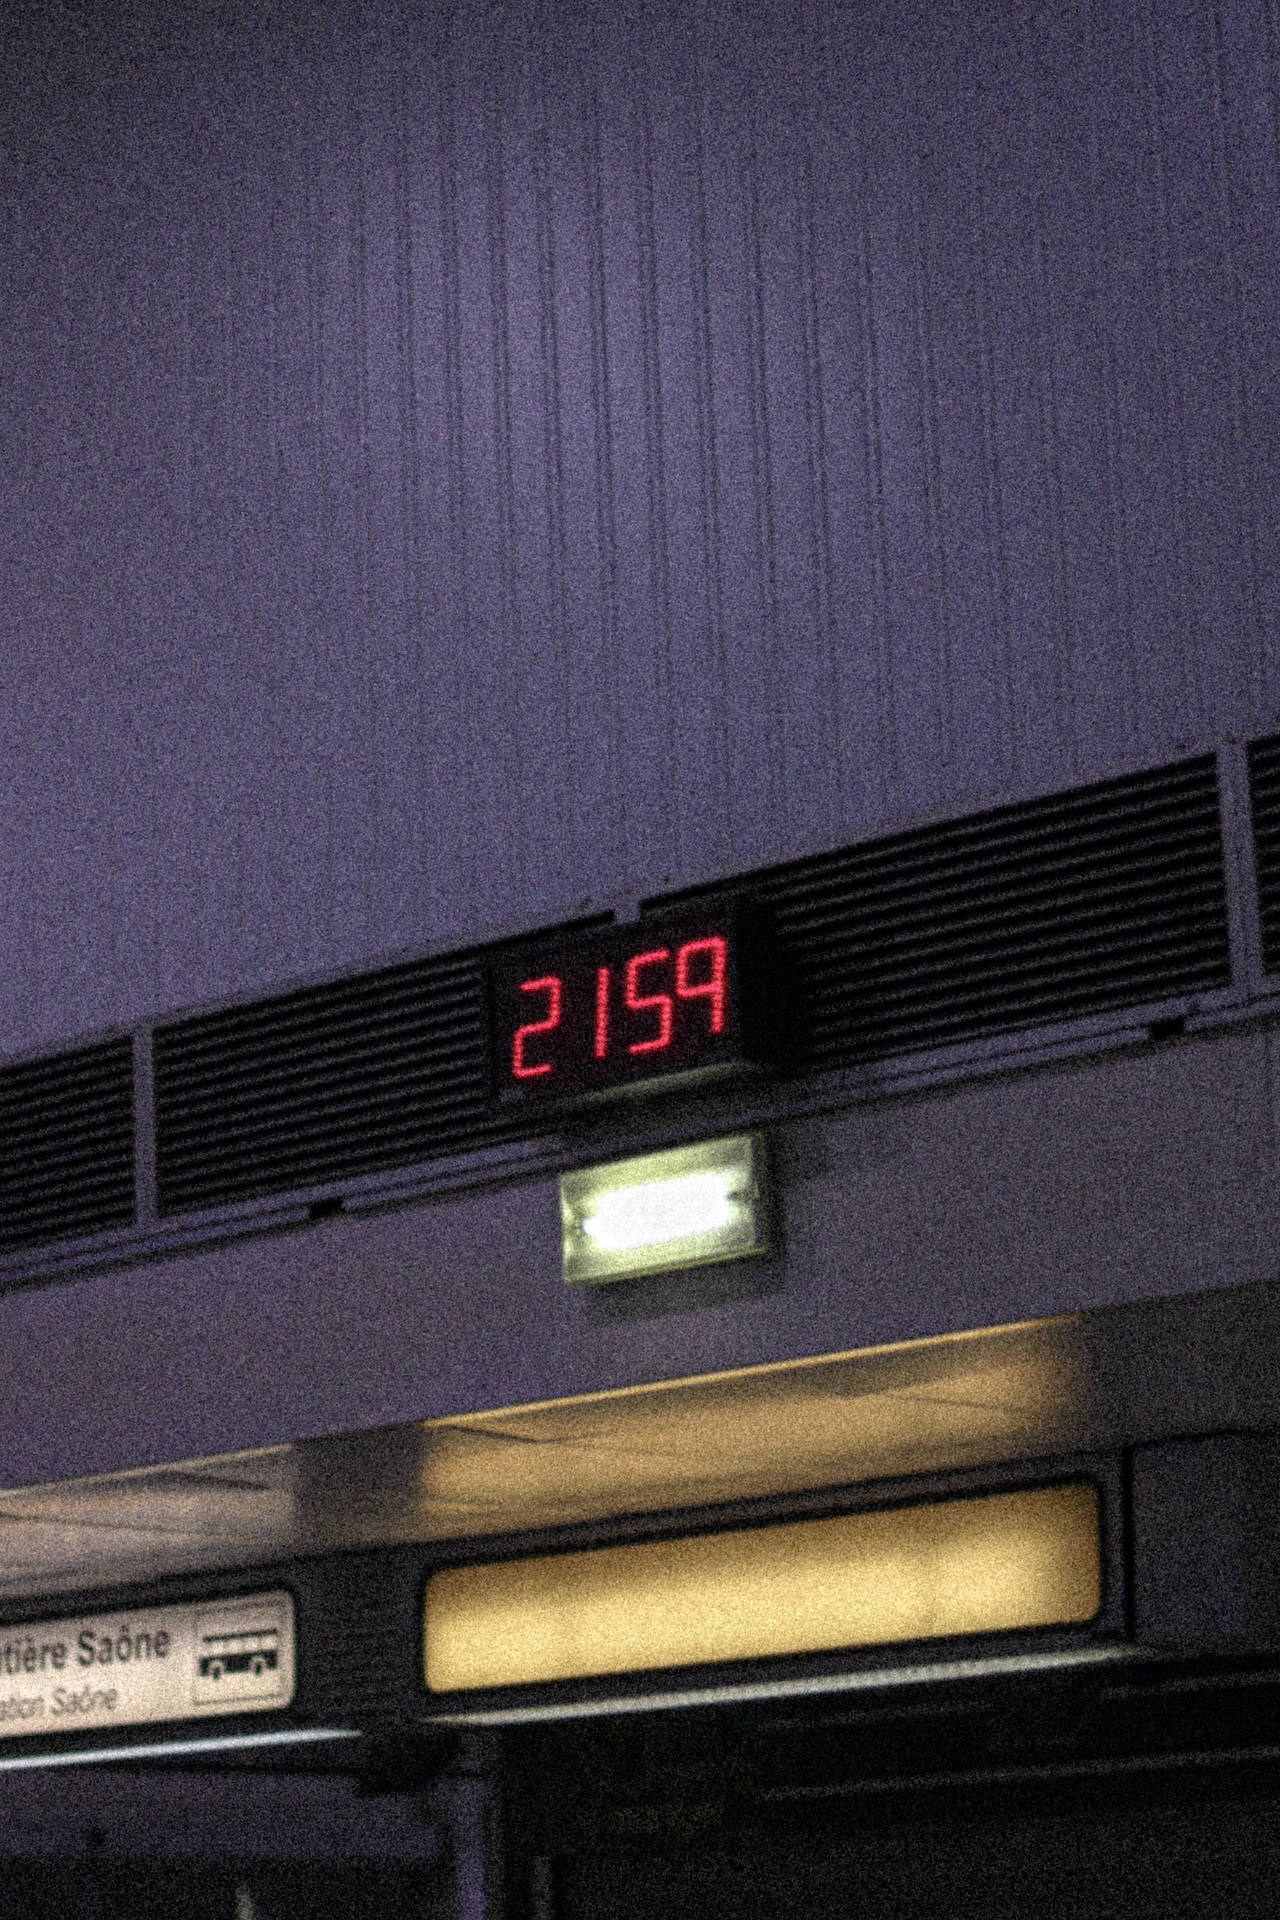 Stunning High Resolution Photograph Of A Digital Wall Clock